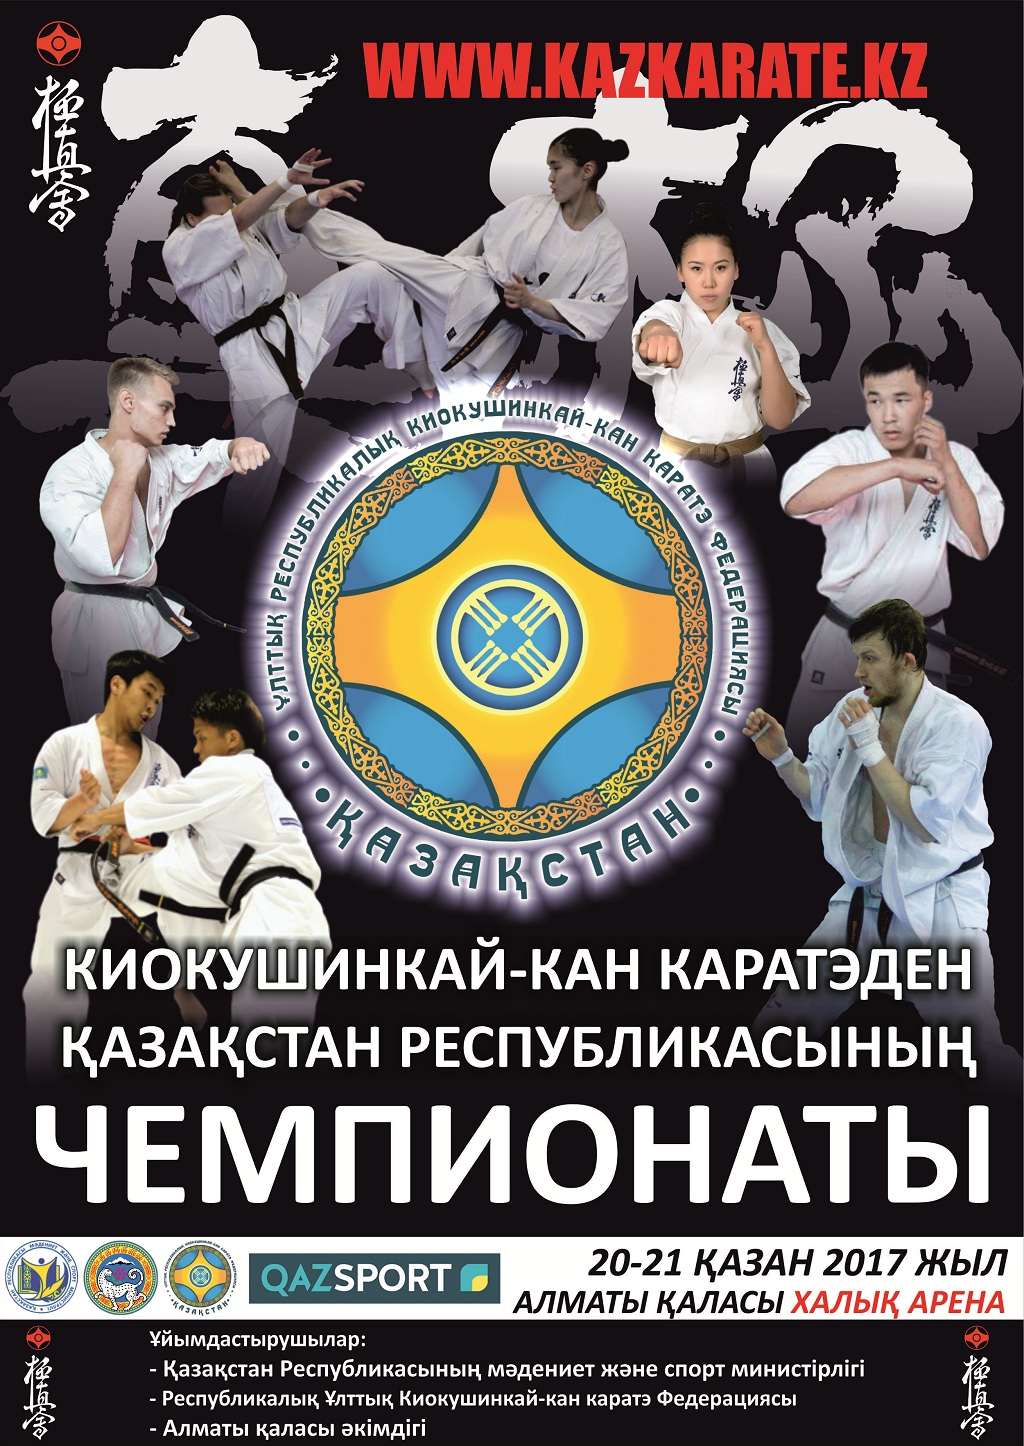 Алматы қаласында киокушинкай-кан каратэден Республика Чемпионаты өтеді